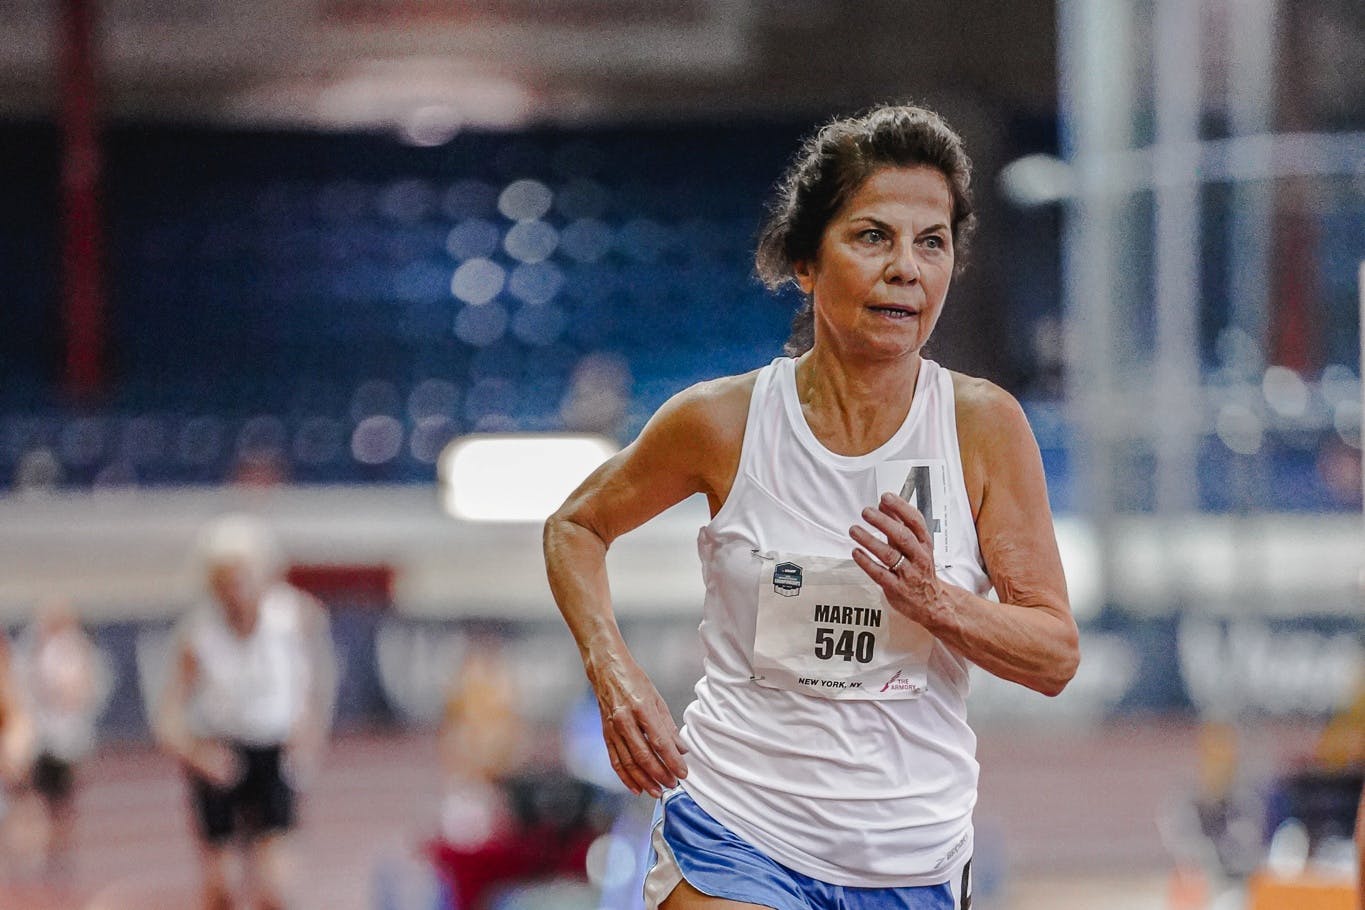 Τρομερό ρεκόρ Αμερικής από την 70χρονη Kathy Martin στα 3 χιλιόμετρα!